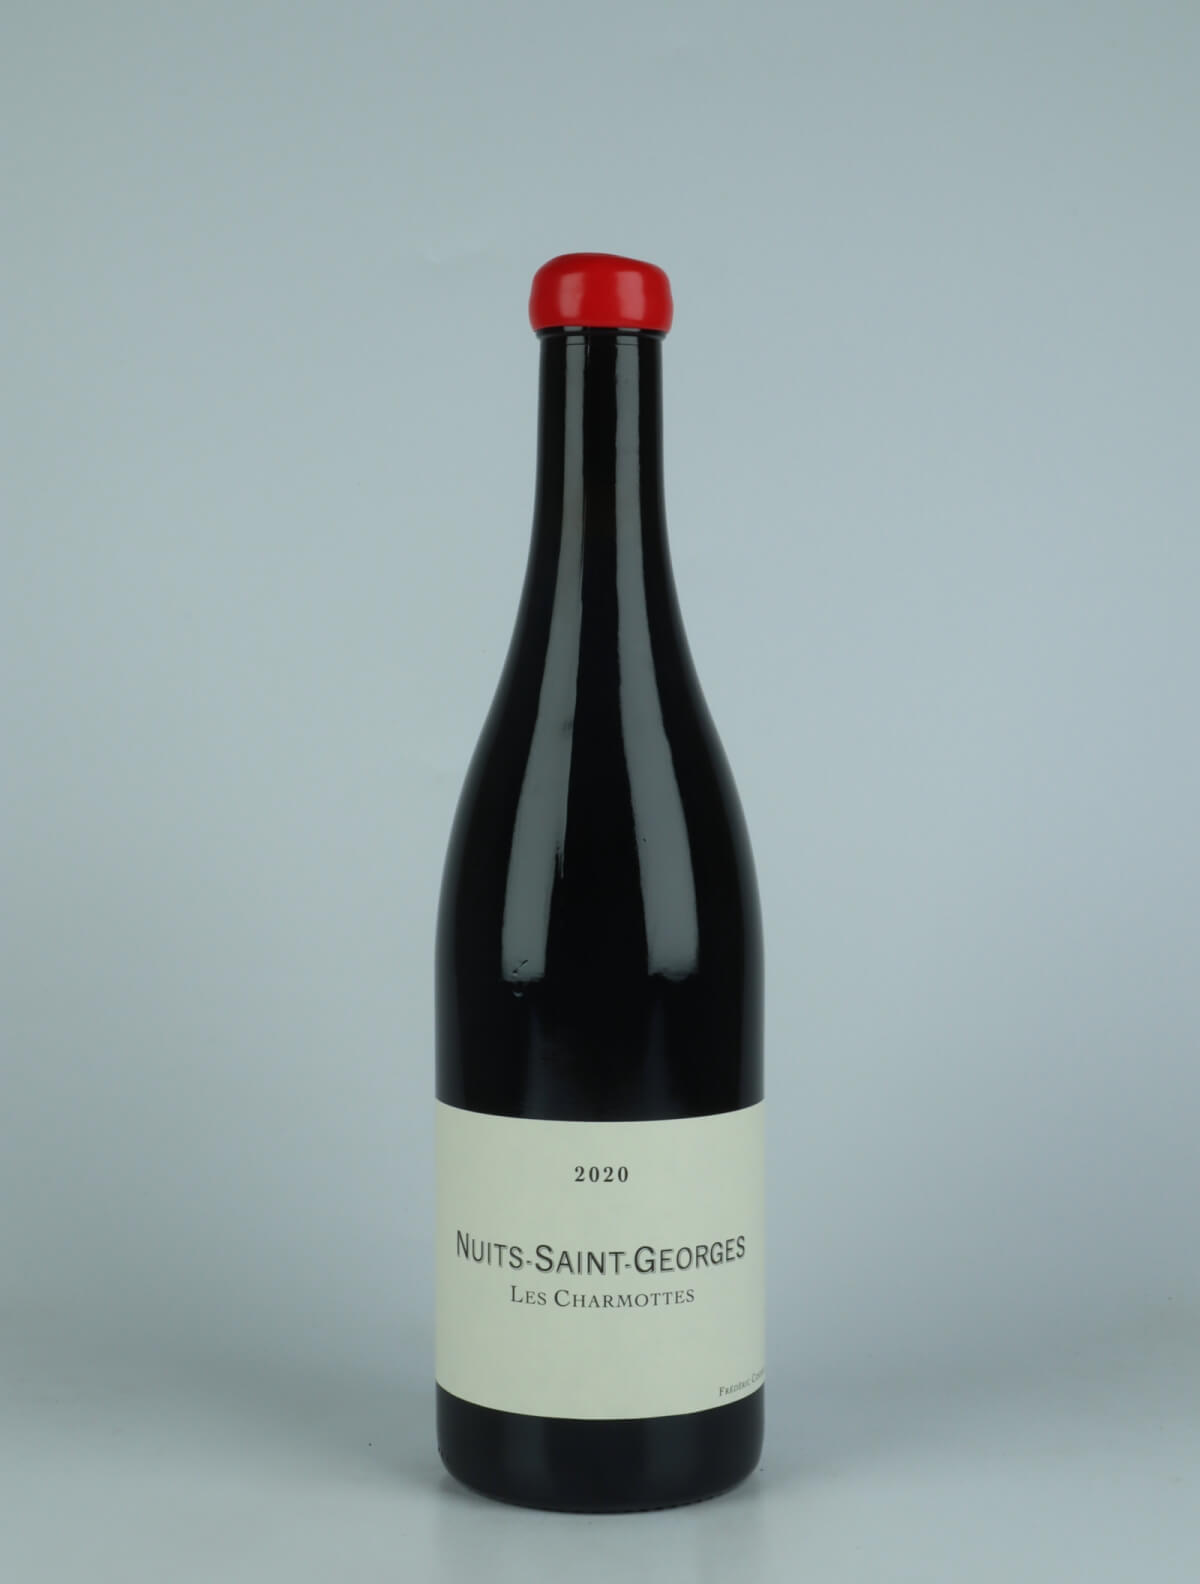 En flaske 2020 Nuits Saint Georges - Les Charmottes Rødvin fra Frédéric Cossard, Bourgogne i Frankrig